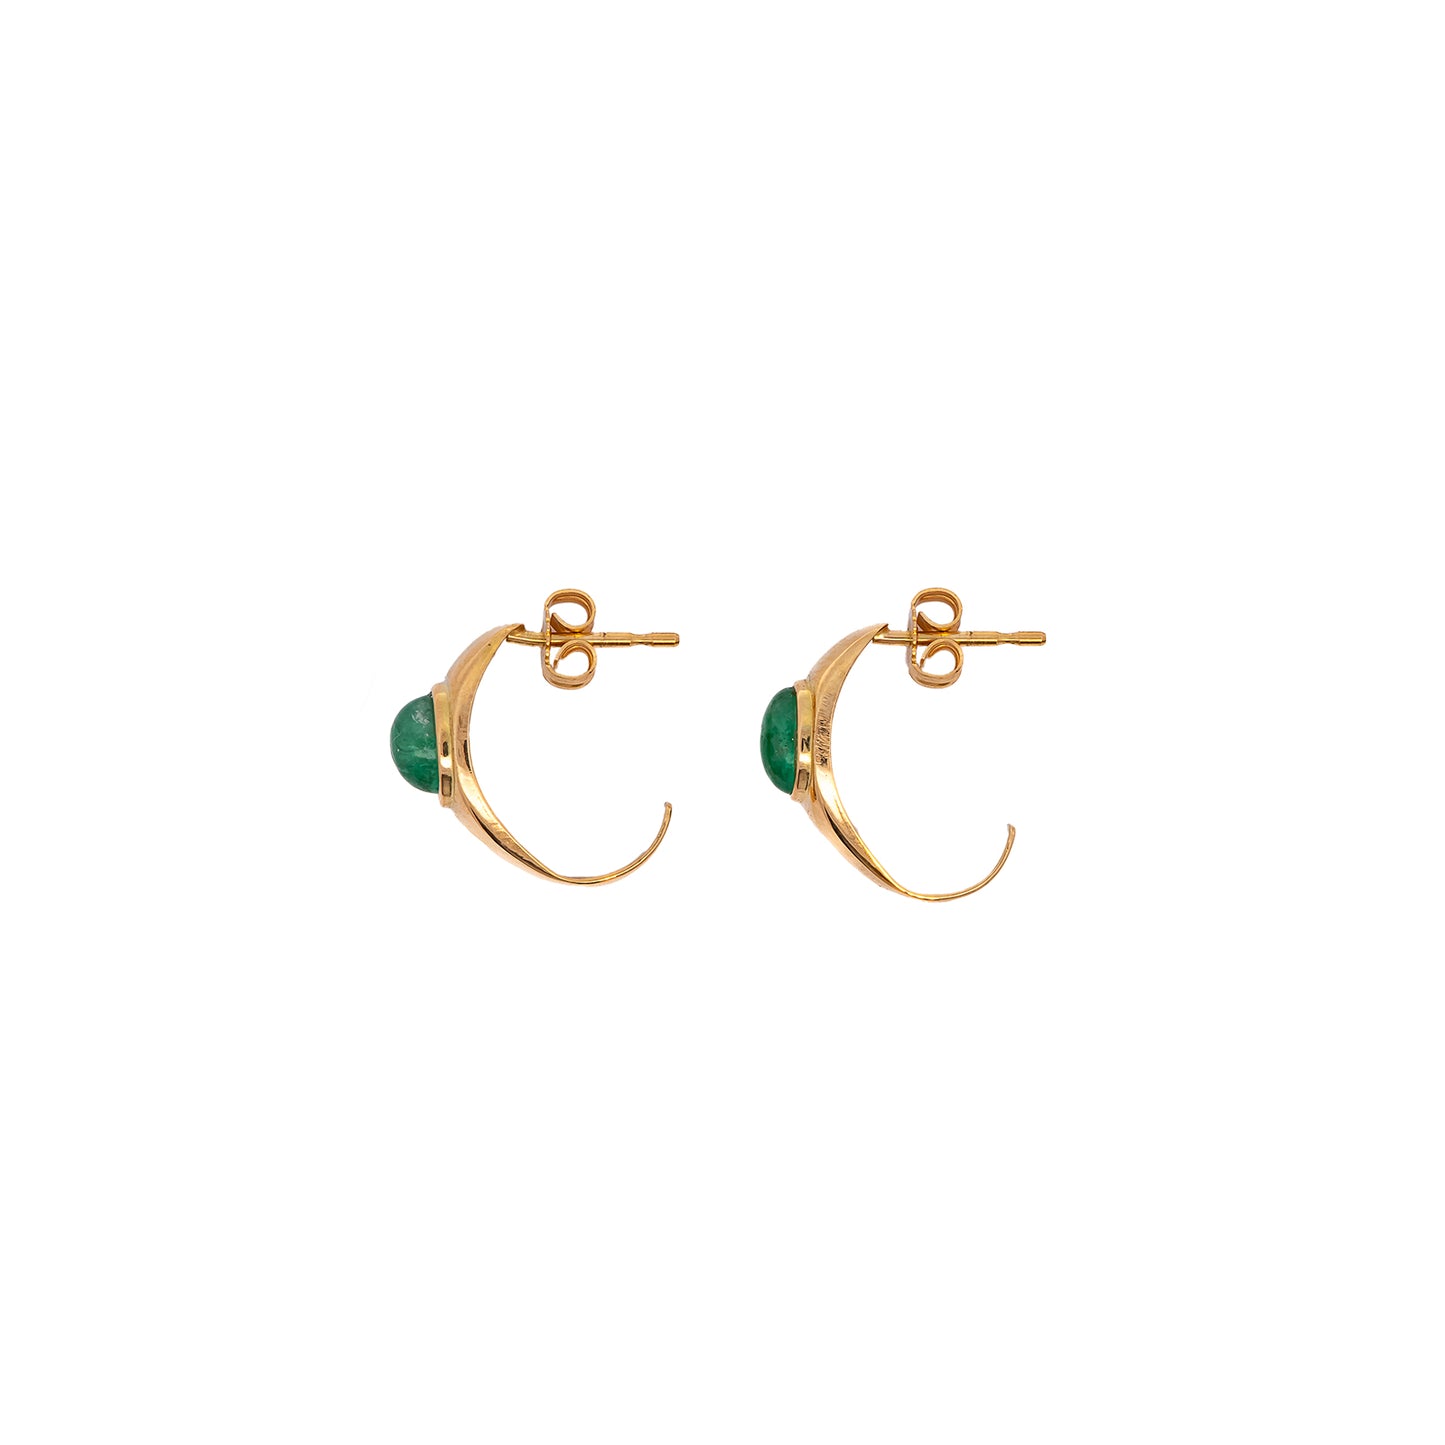 long earrings stud emerald diamond yellow gold 14K women's jewelry gold earrings